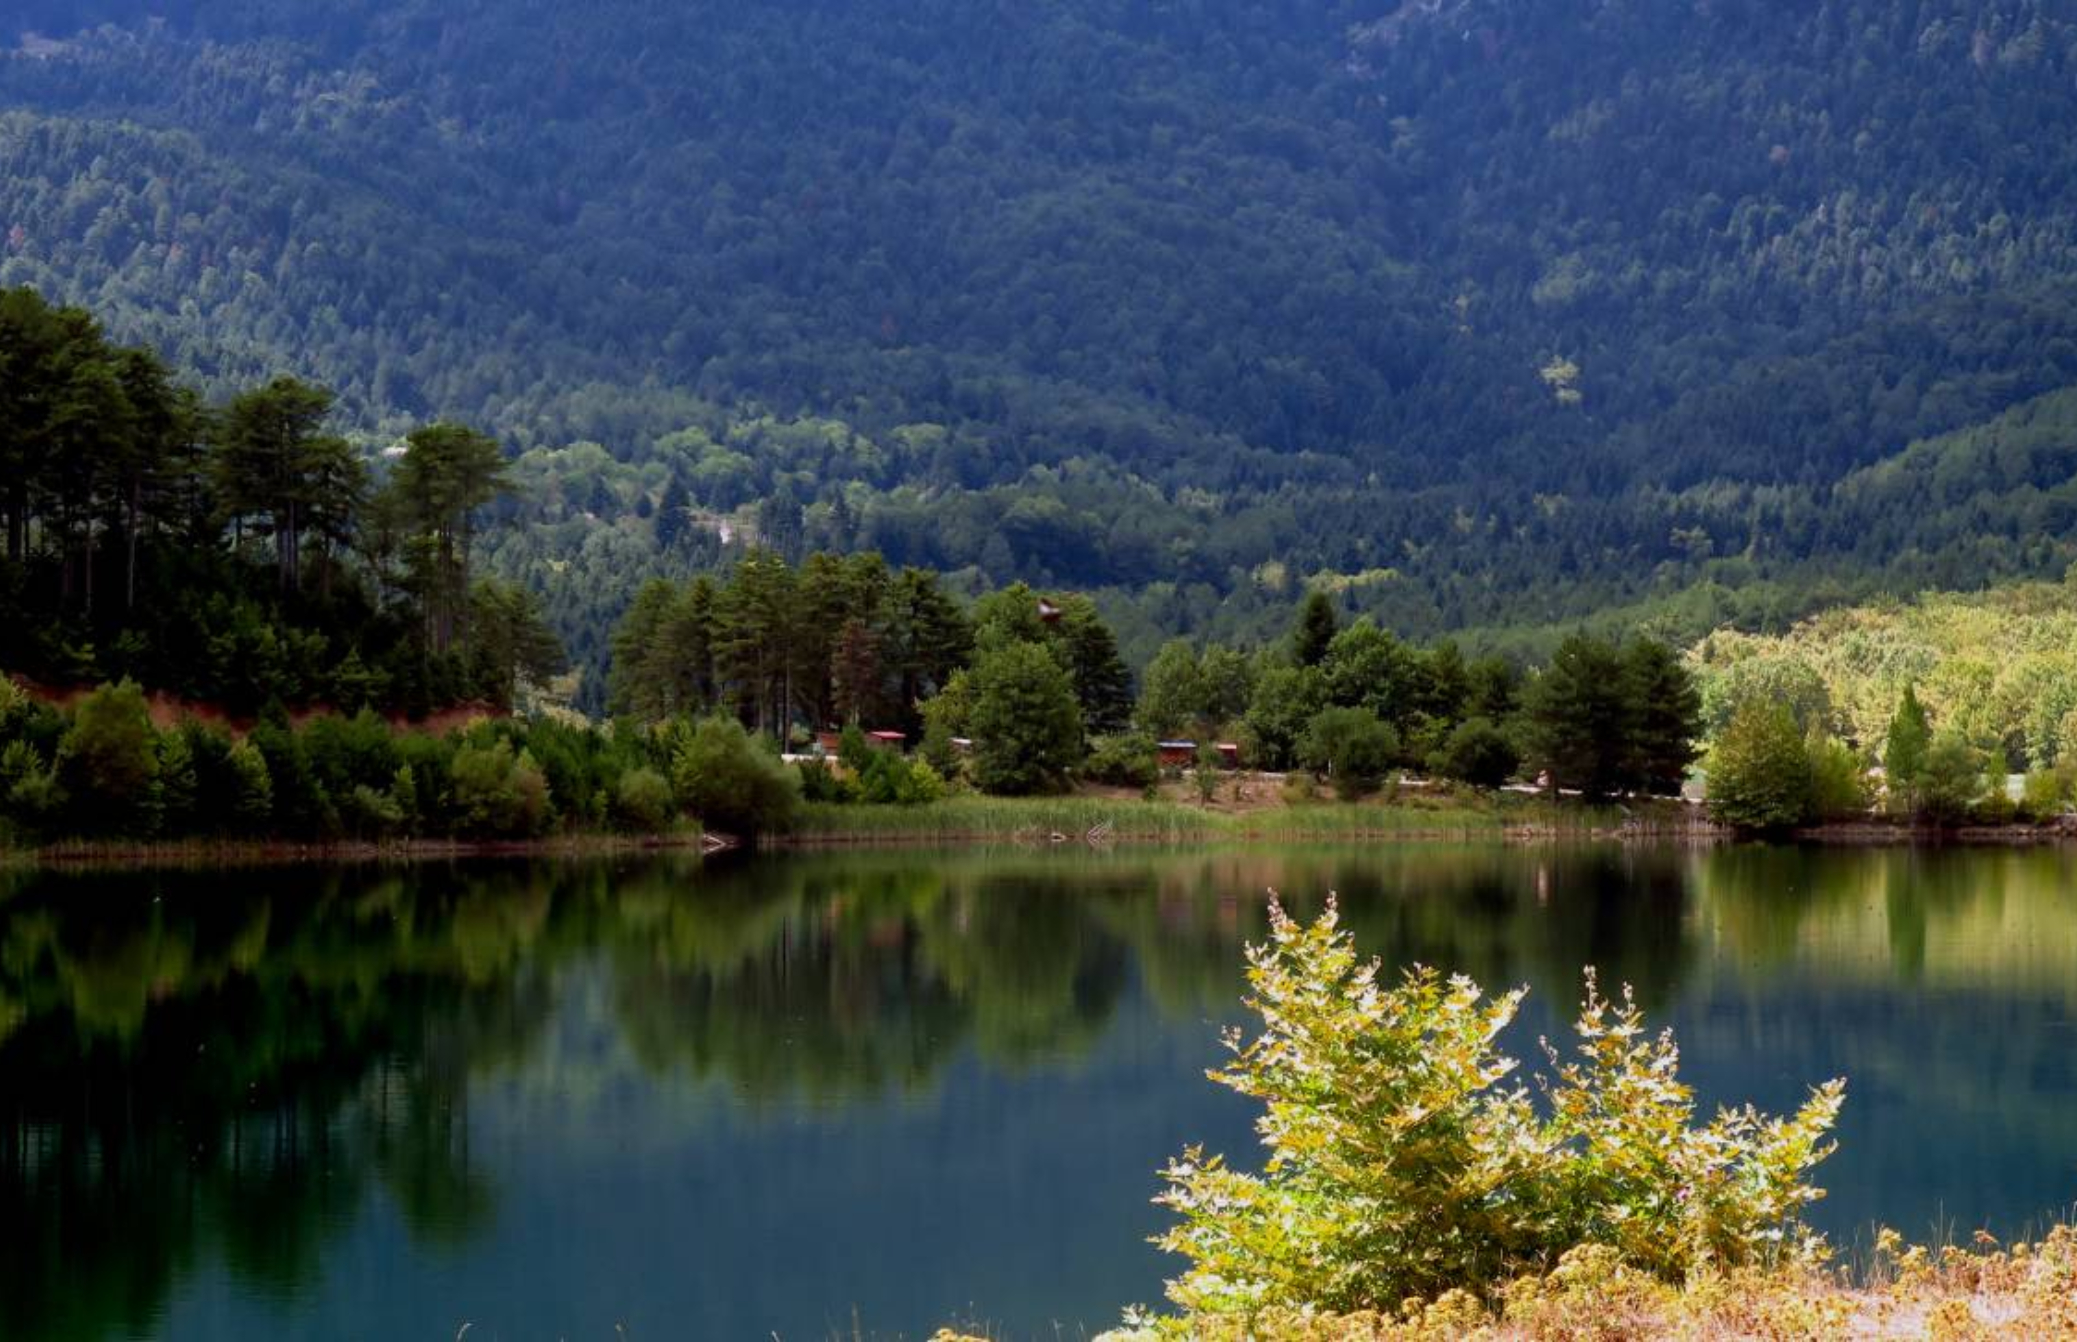 Λίμνη Δόξα: Ένας ονειρεμένος προορισμός μόλις 2 ώρες από την Αθήνα